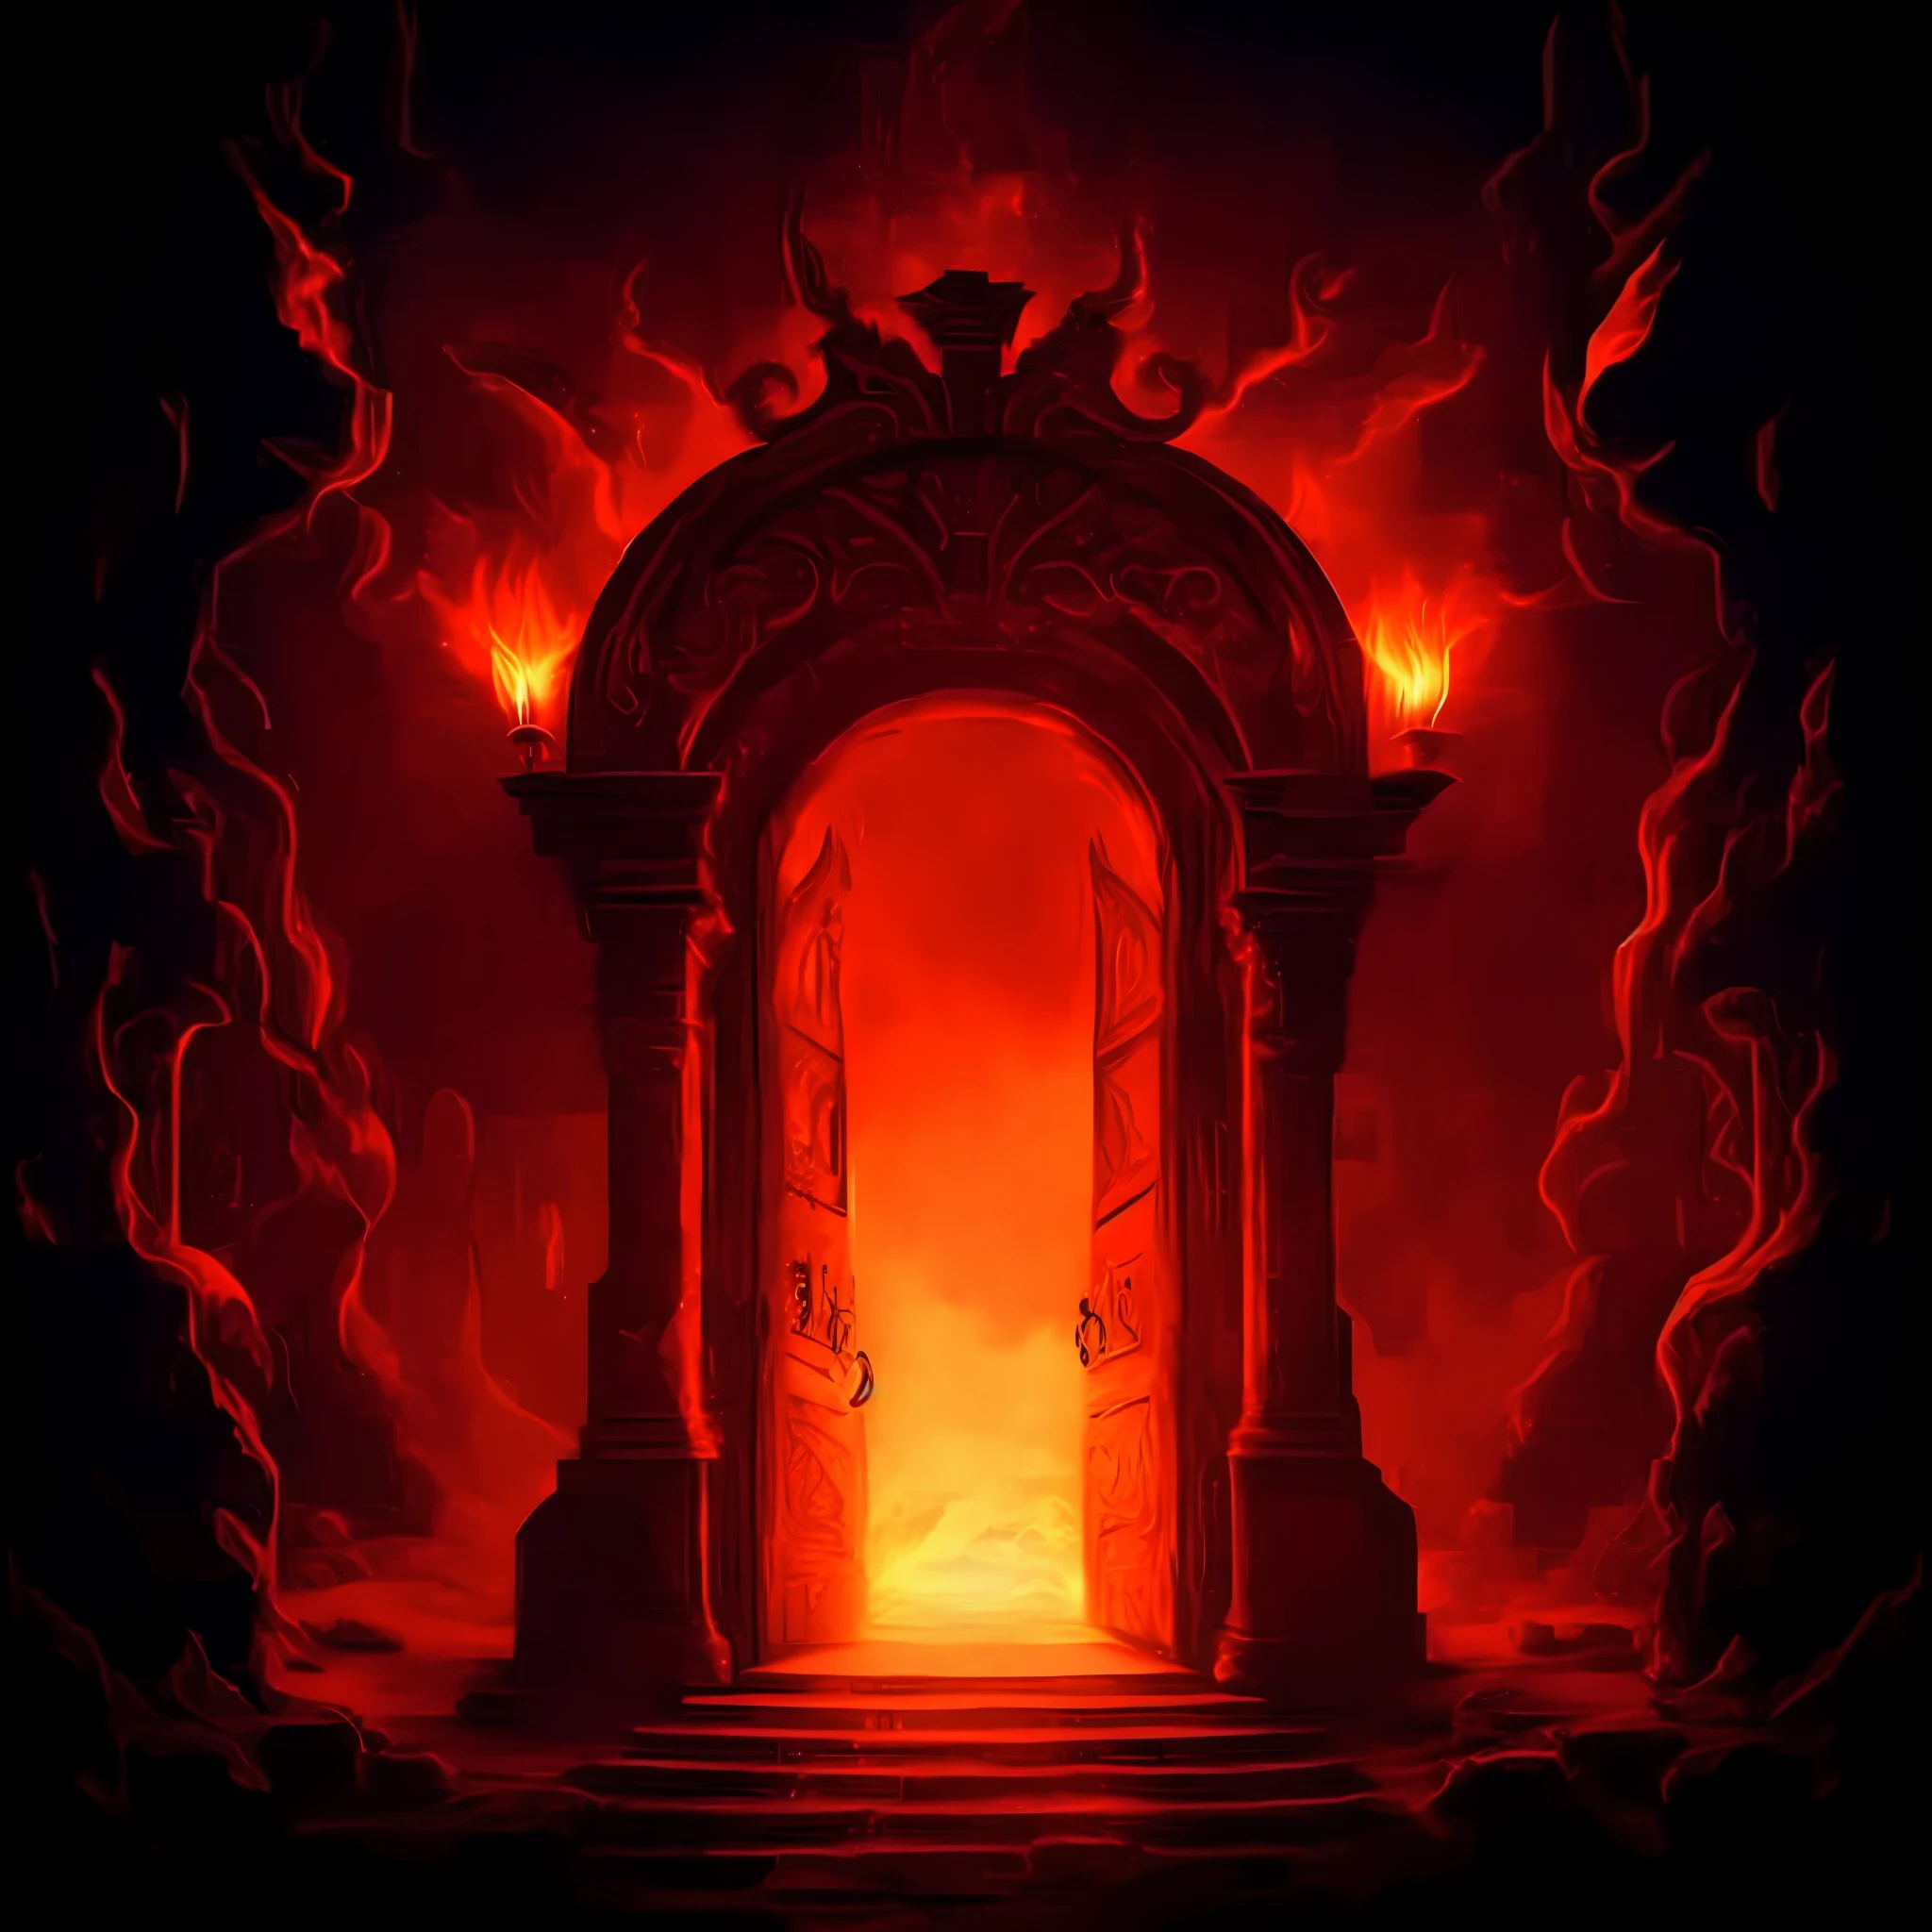 黑暗的房间里有一扇红色的防火门，火从里面冒出来, 通往失落的火焰领域的门户, 地狱之门, 地狱之门, the 地狱之门, the 地狱之门, 地狱之门, 地狱之门, 地狱背景, 通往以太领域的门户, 研究地狱裂隙门户, 通往深处的门户